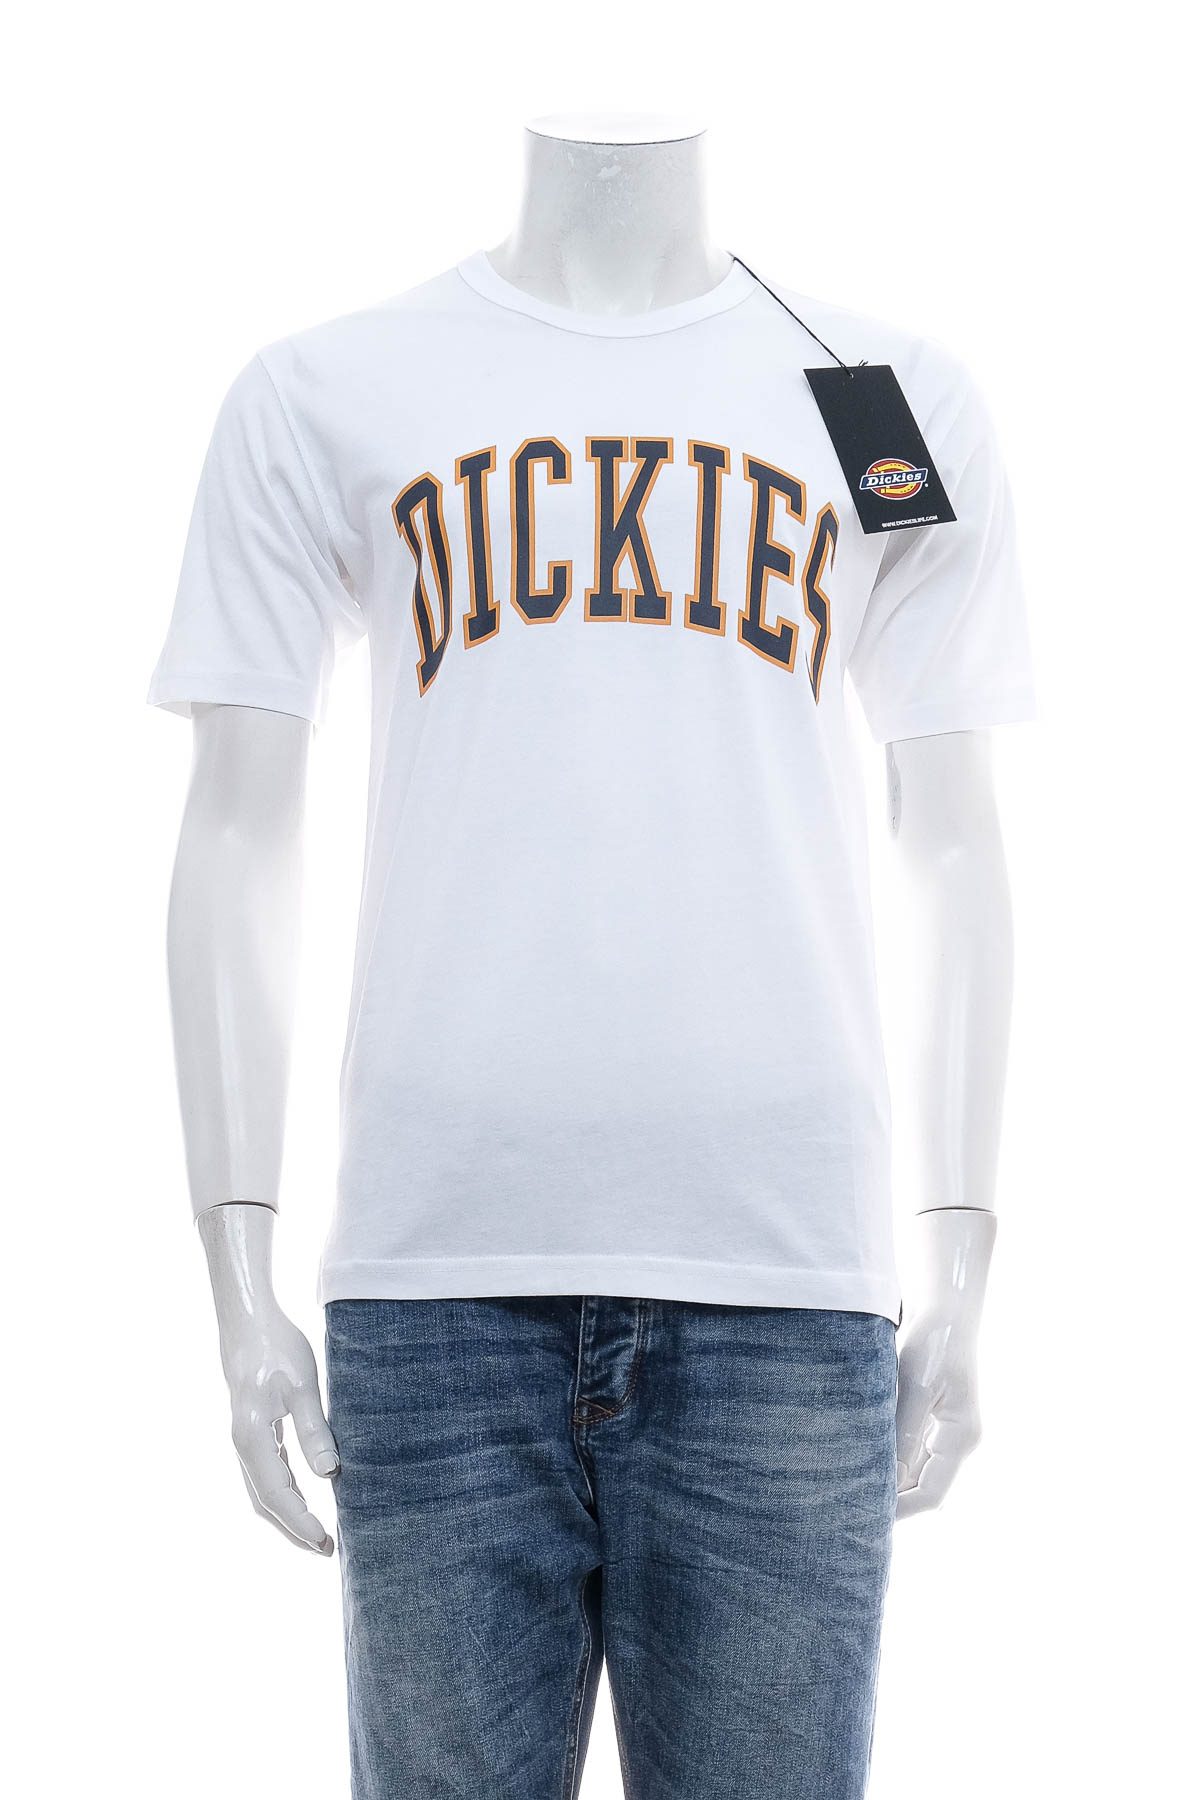 Tricou pentru bărbați - Dickies - 0